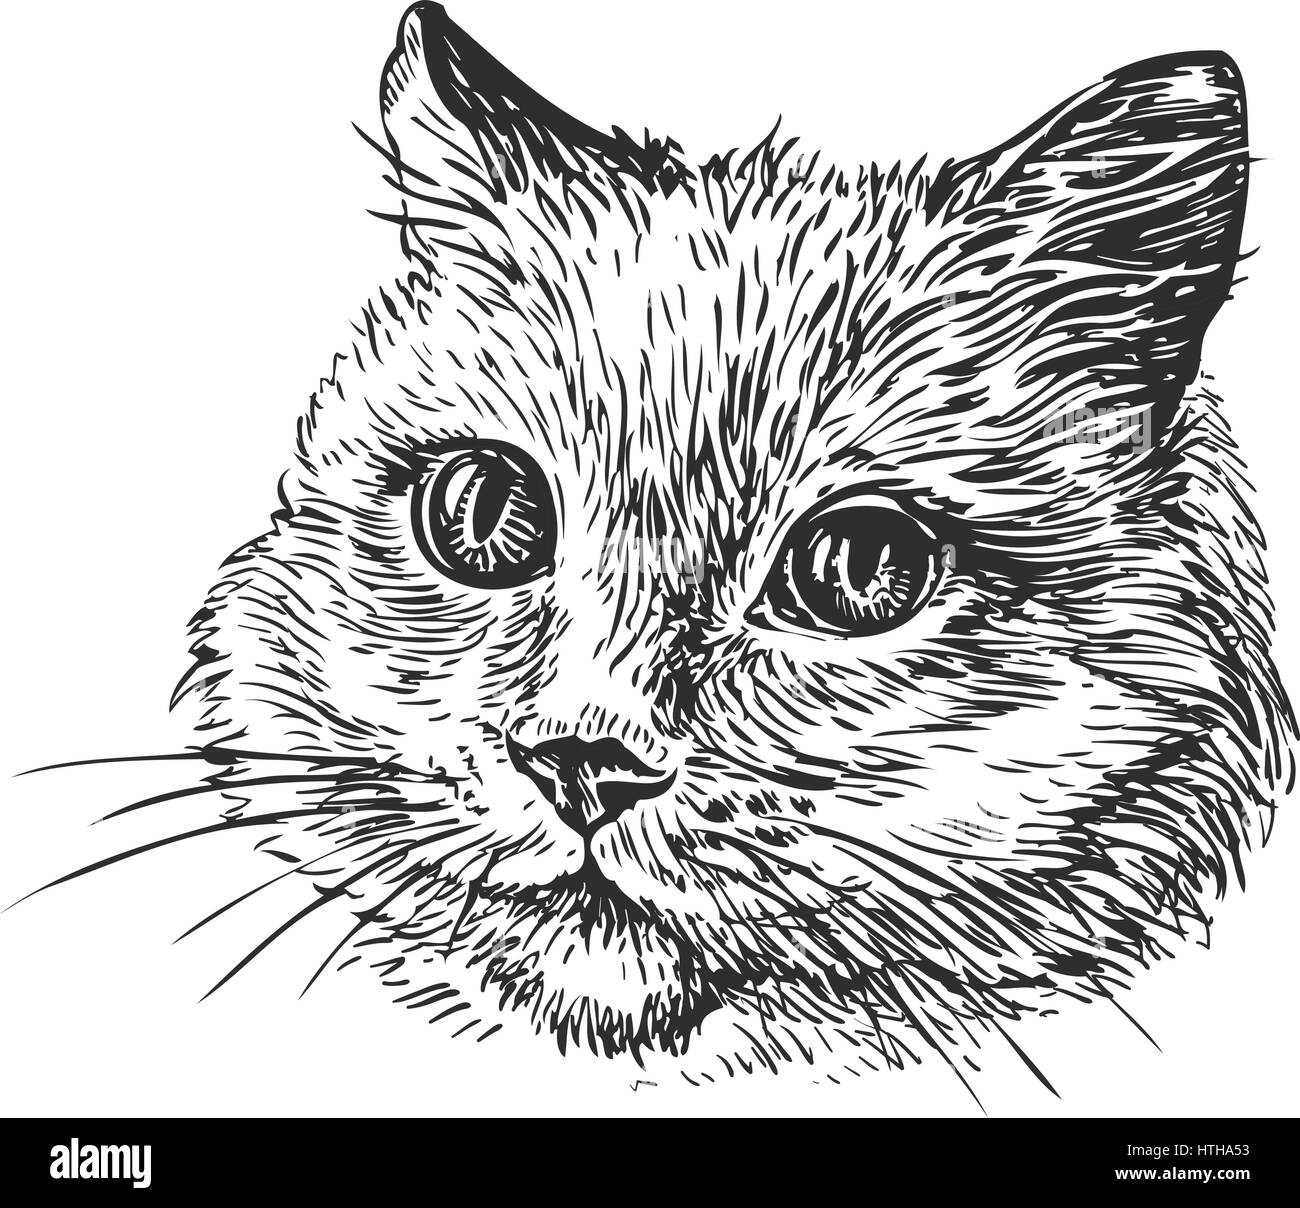 Handgezeichnete Portrait Katze. Skizze-Vektor-illustration Stock Vektor